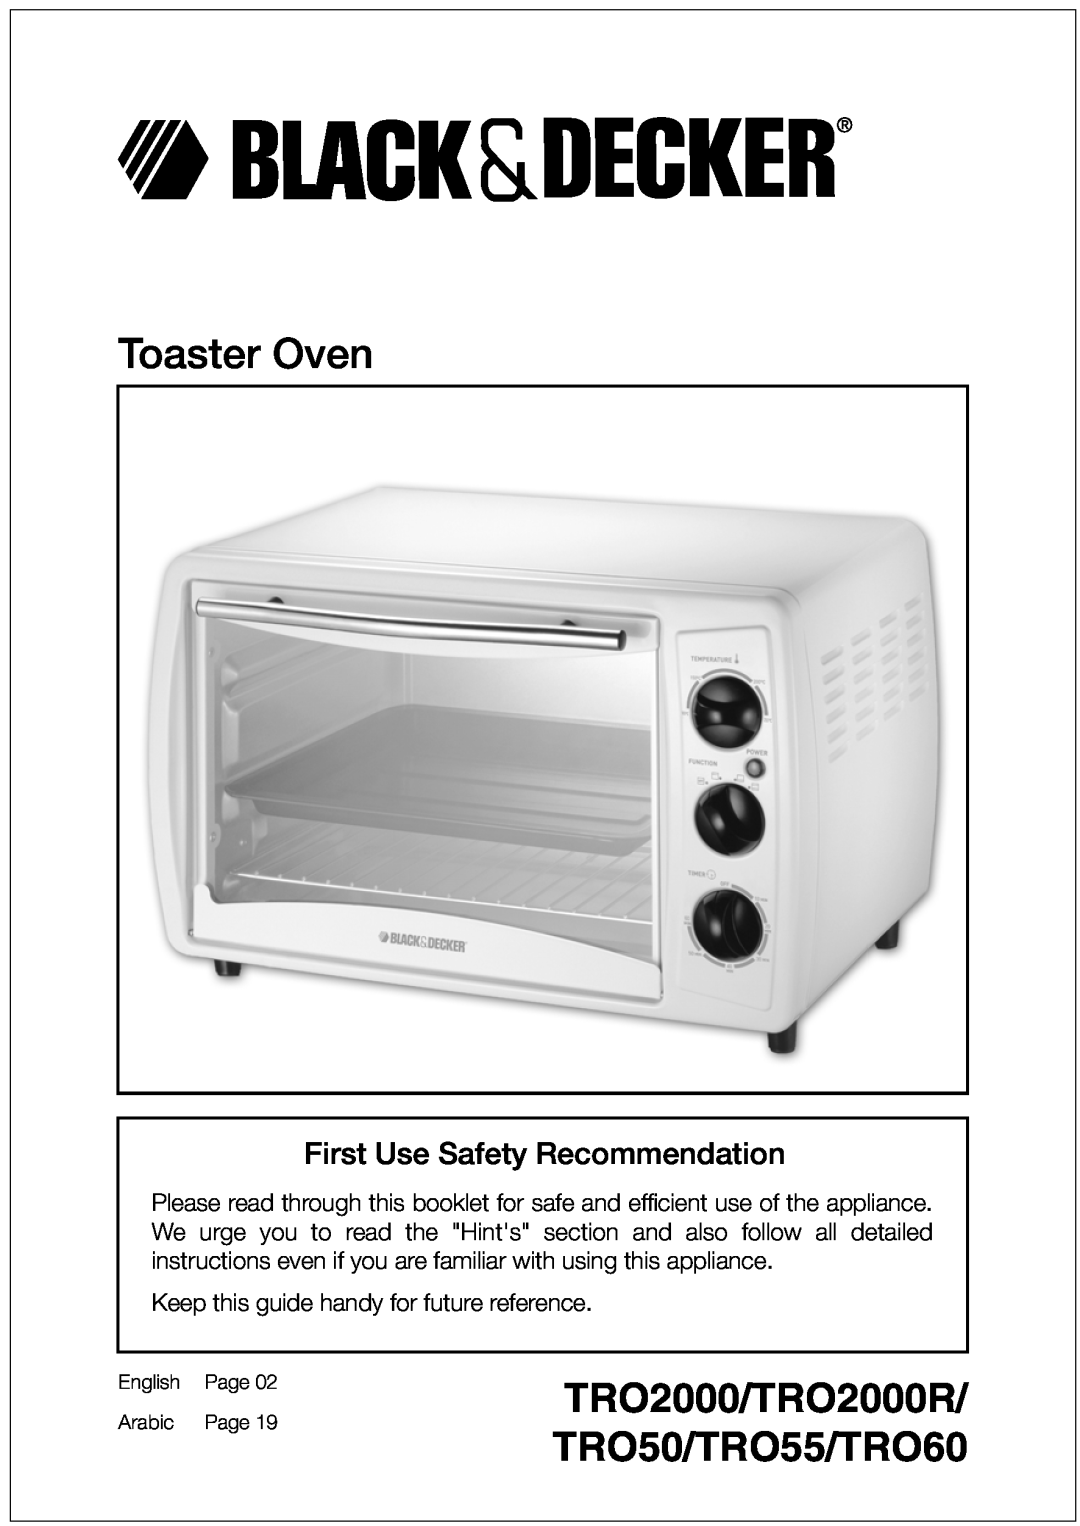 Black & Decker manual Toaster Oven, TRO2000/TRO50 TRO55/TRO60, First Use Safety Recommendation, English, Farsi, Arabic 